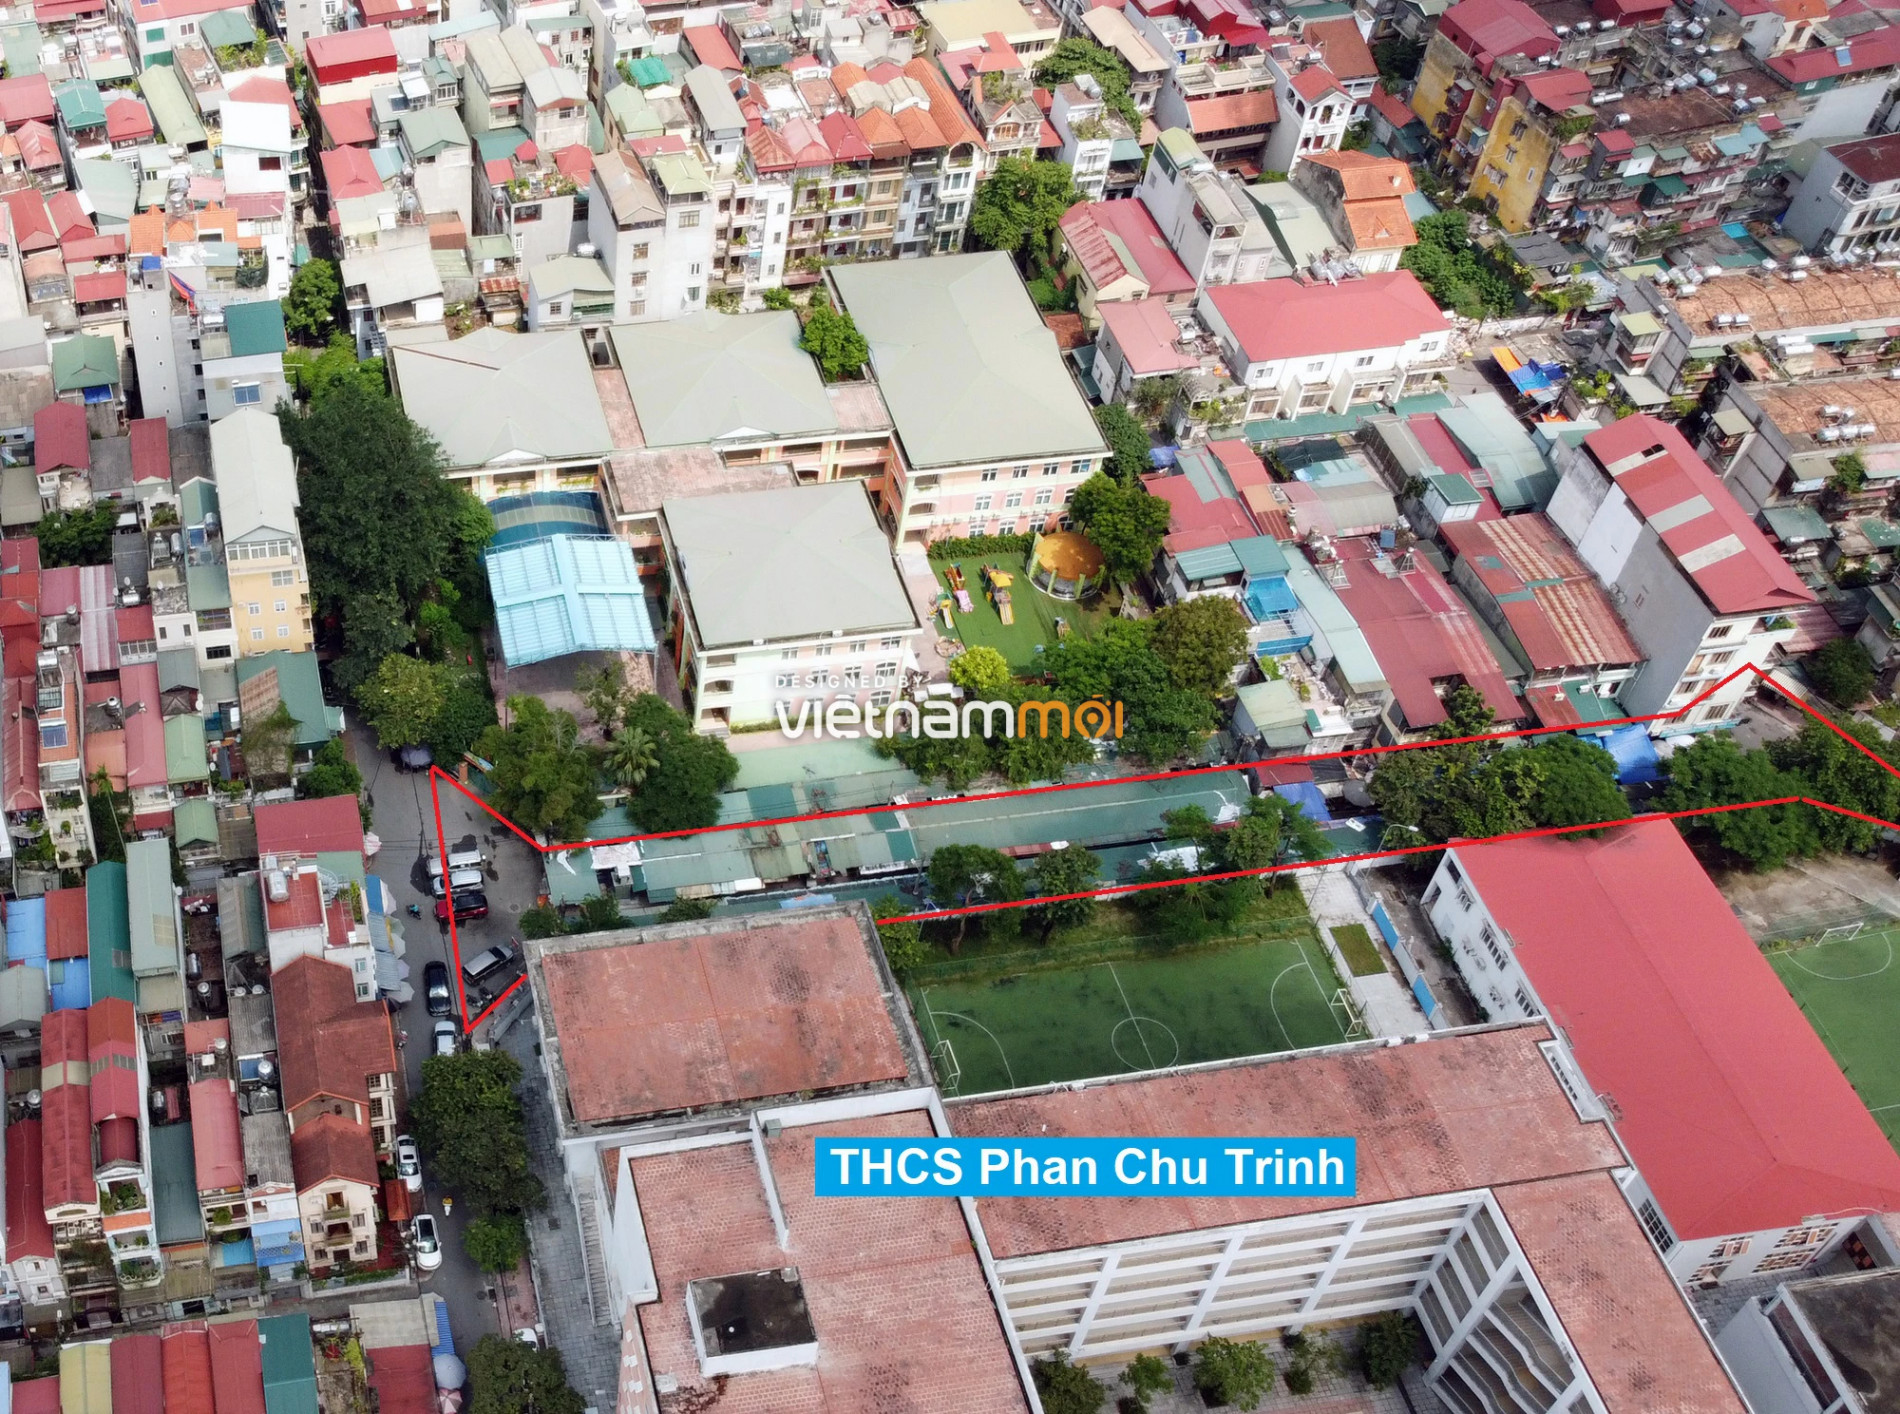 Những khu đất sắp thu hồi để mở đường ở phường Ngọc Khánh, Ba Đình, Hà Nội (phần 3) - Ảnh 5.